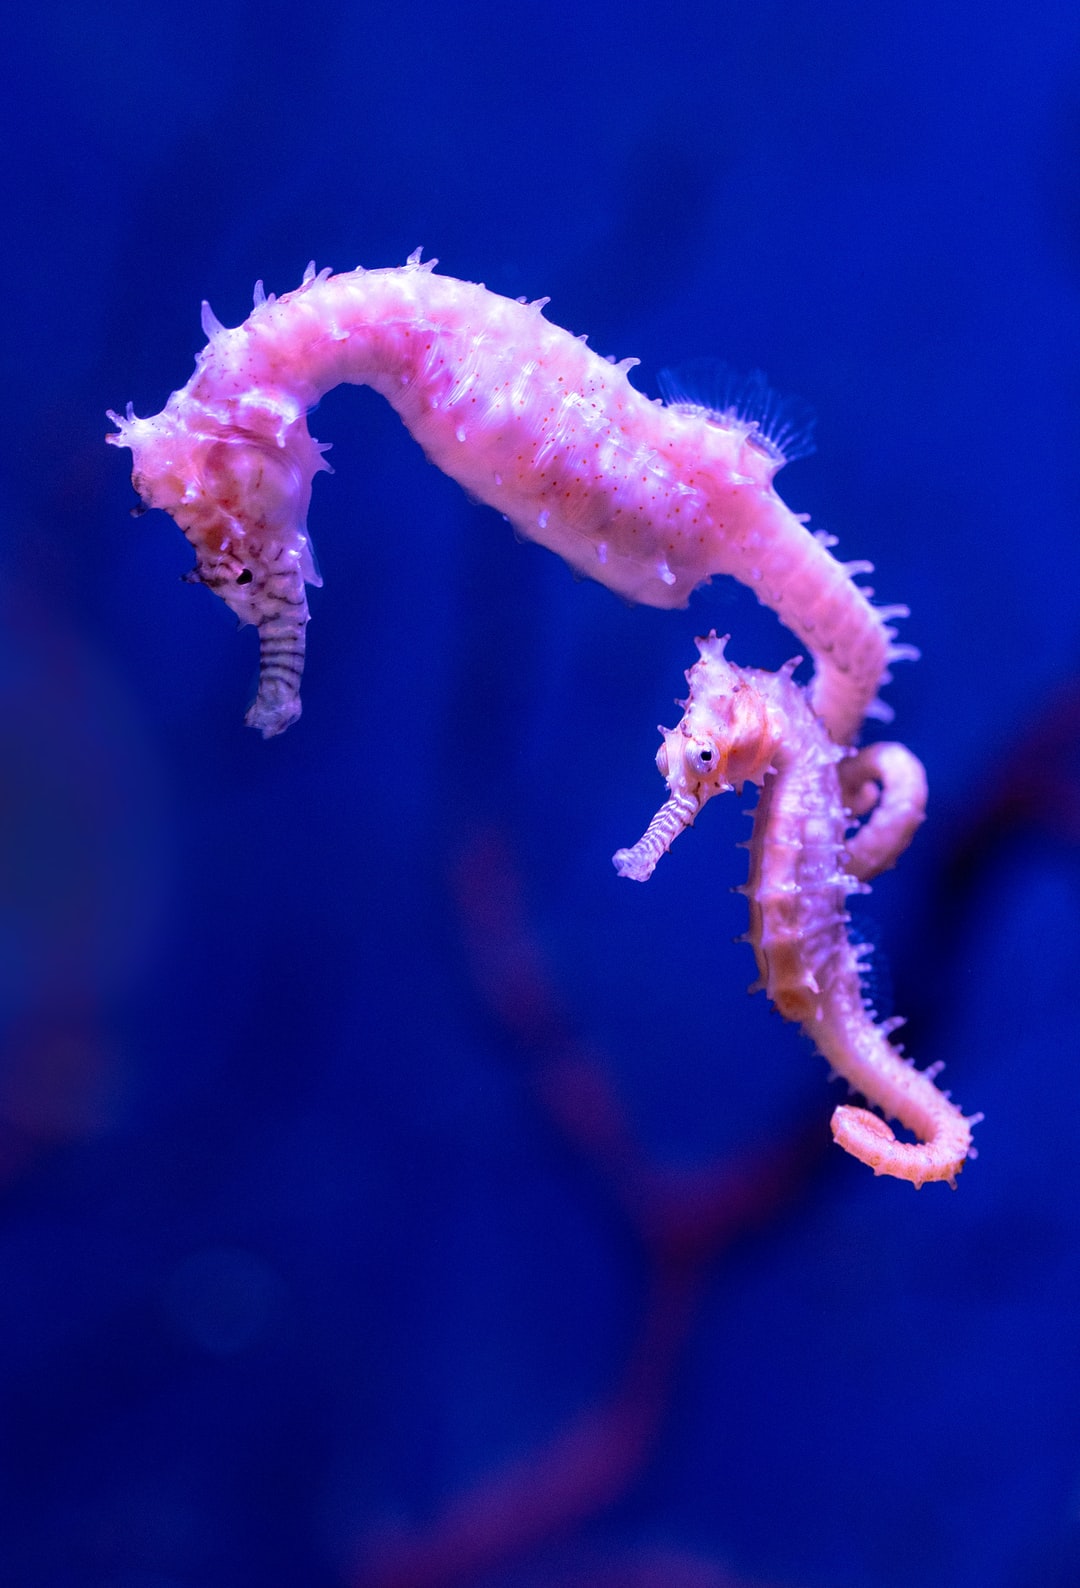 25 wichtige Fragen zu Wie Hoch Muss Der Bodengrund Im Aquarium Sein?